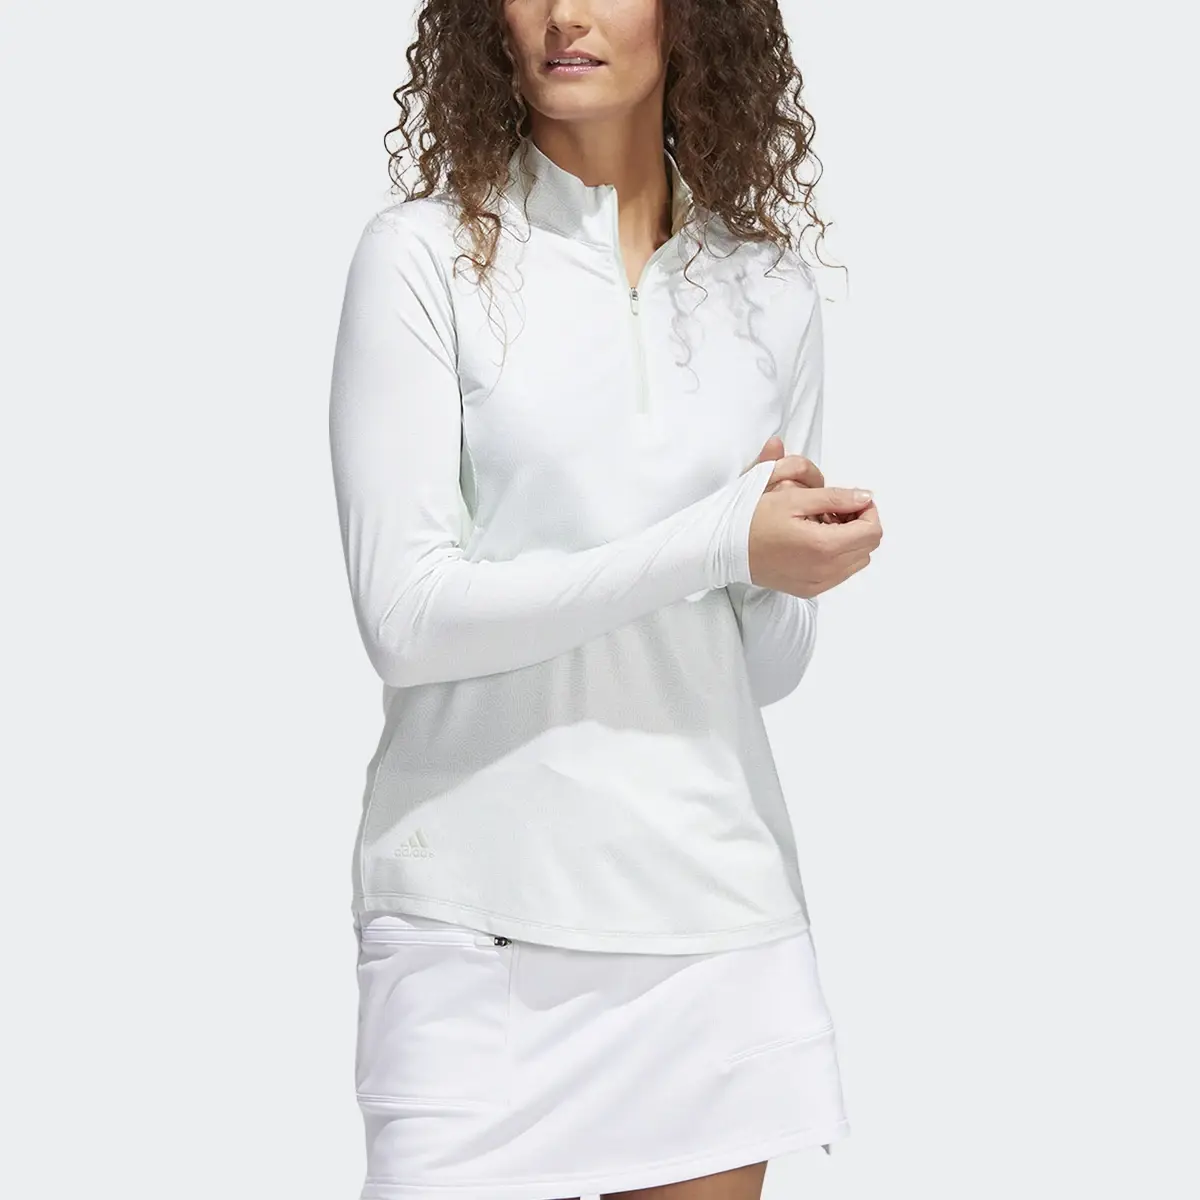 Adidas Ultimate365 Polo Shirt. 1